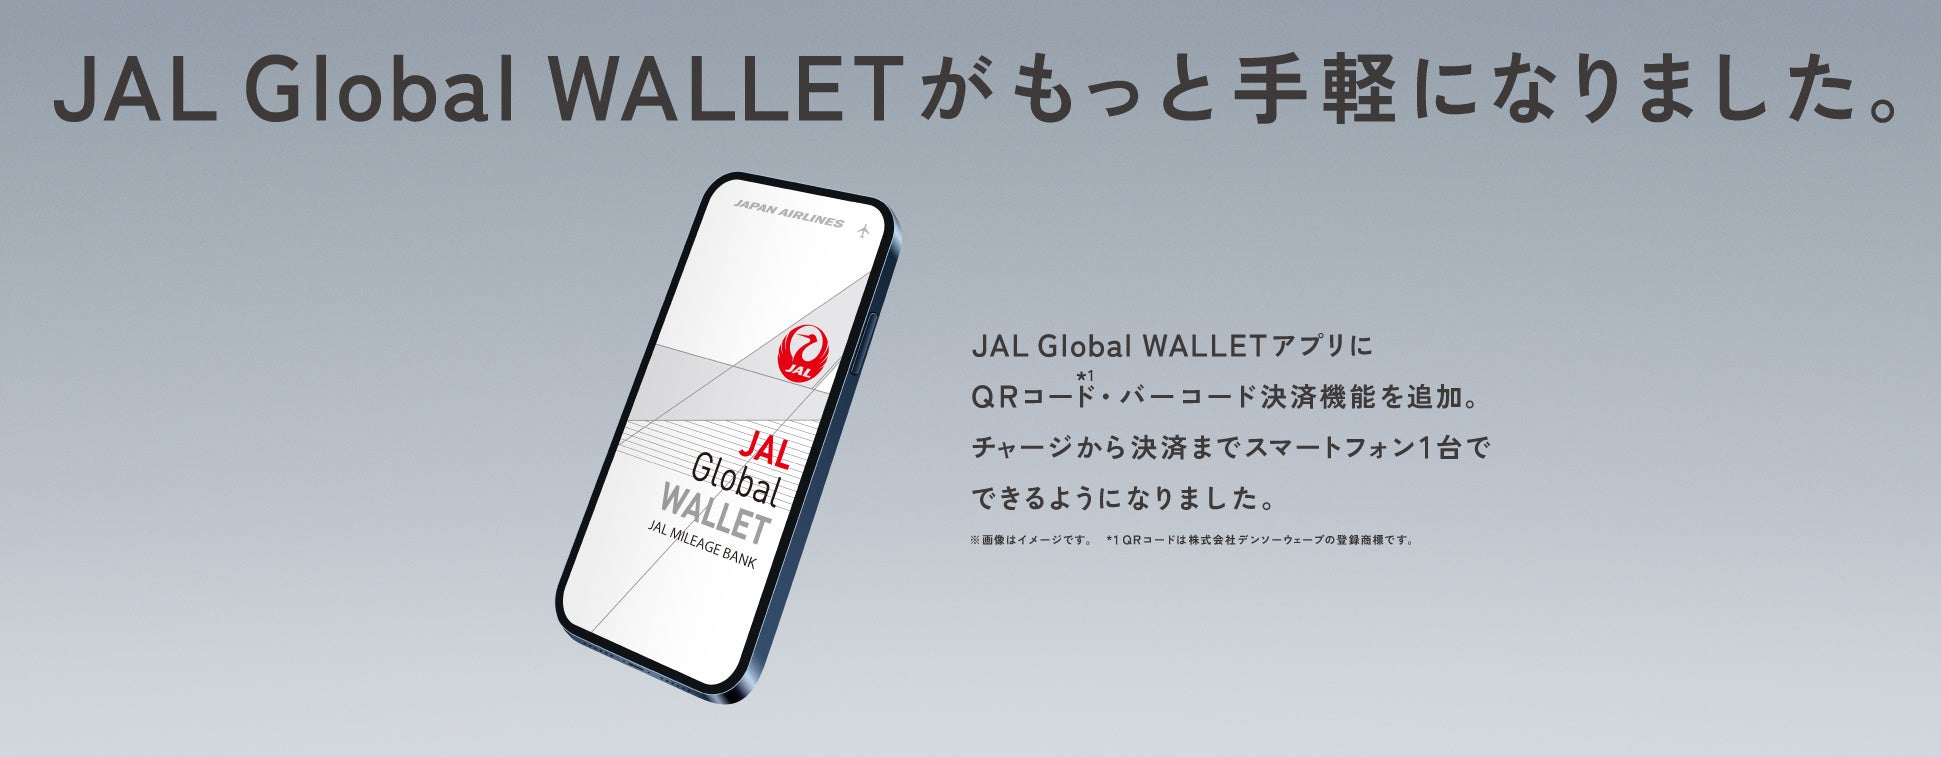 スマートフォン決済サービス「JAL Pay」を3月22日に開始